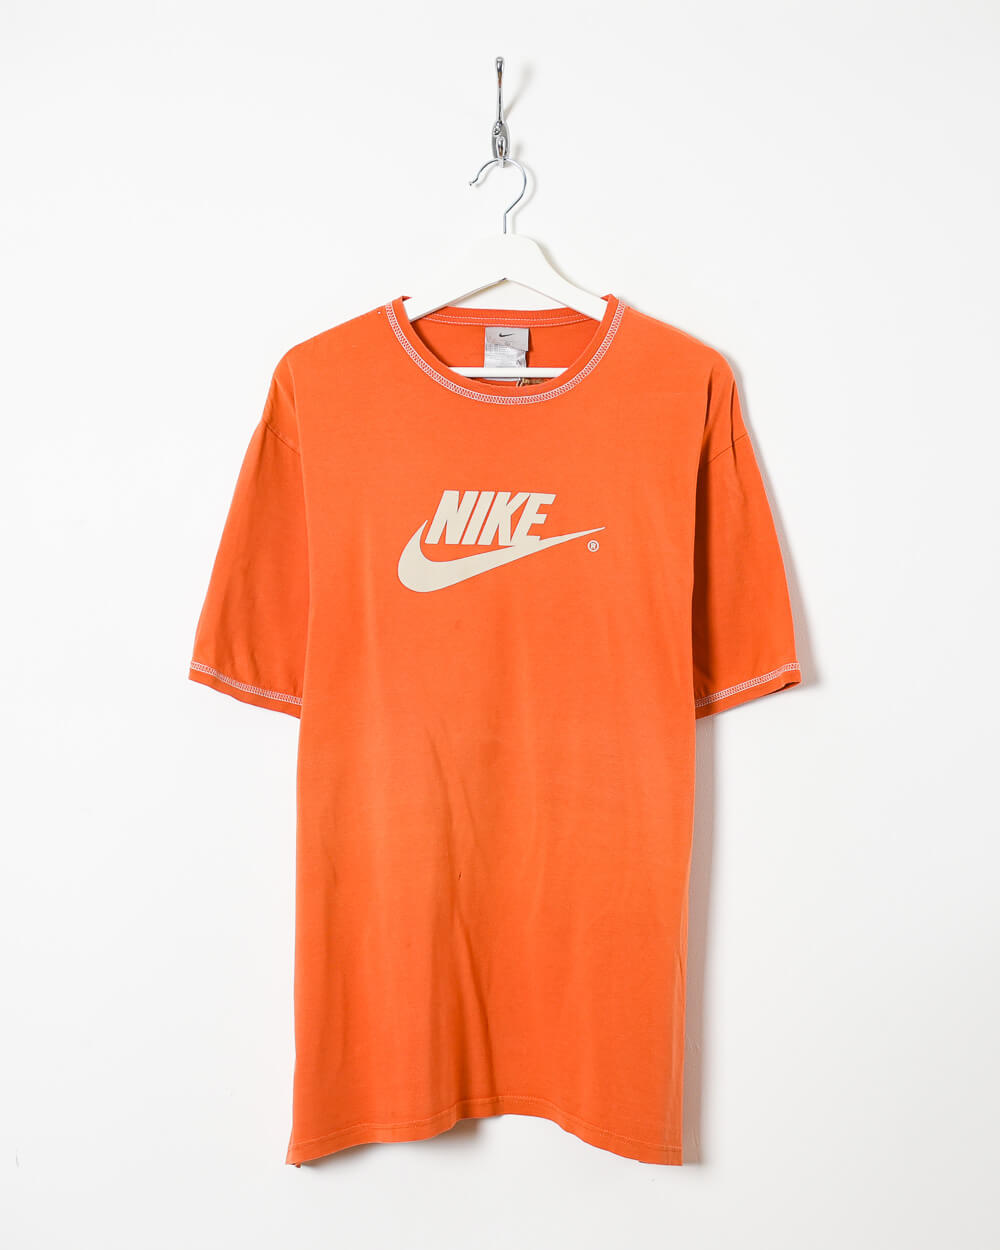 No es suficiente Fácil ruptura Nike T-Shirt - X-Large | Domno Vintage